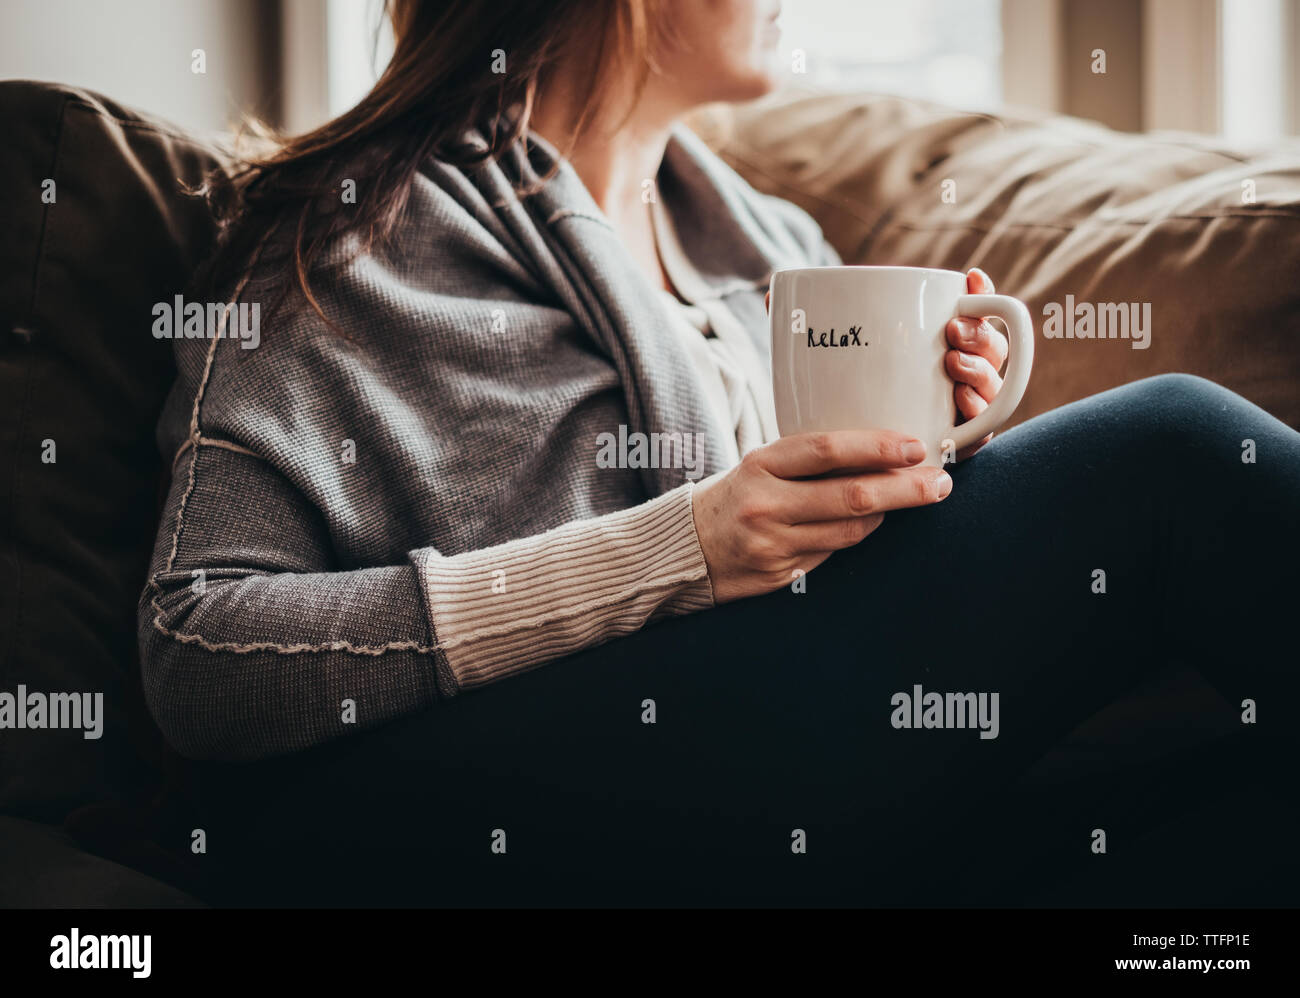 Immagine ritagliata della donna tenendo la tazza con parola rilassatevi su di esso su un lettino. Foto Stock